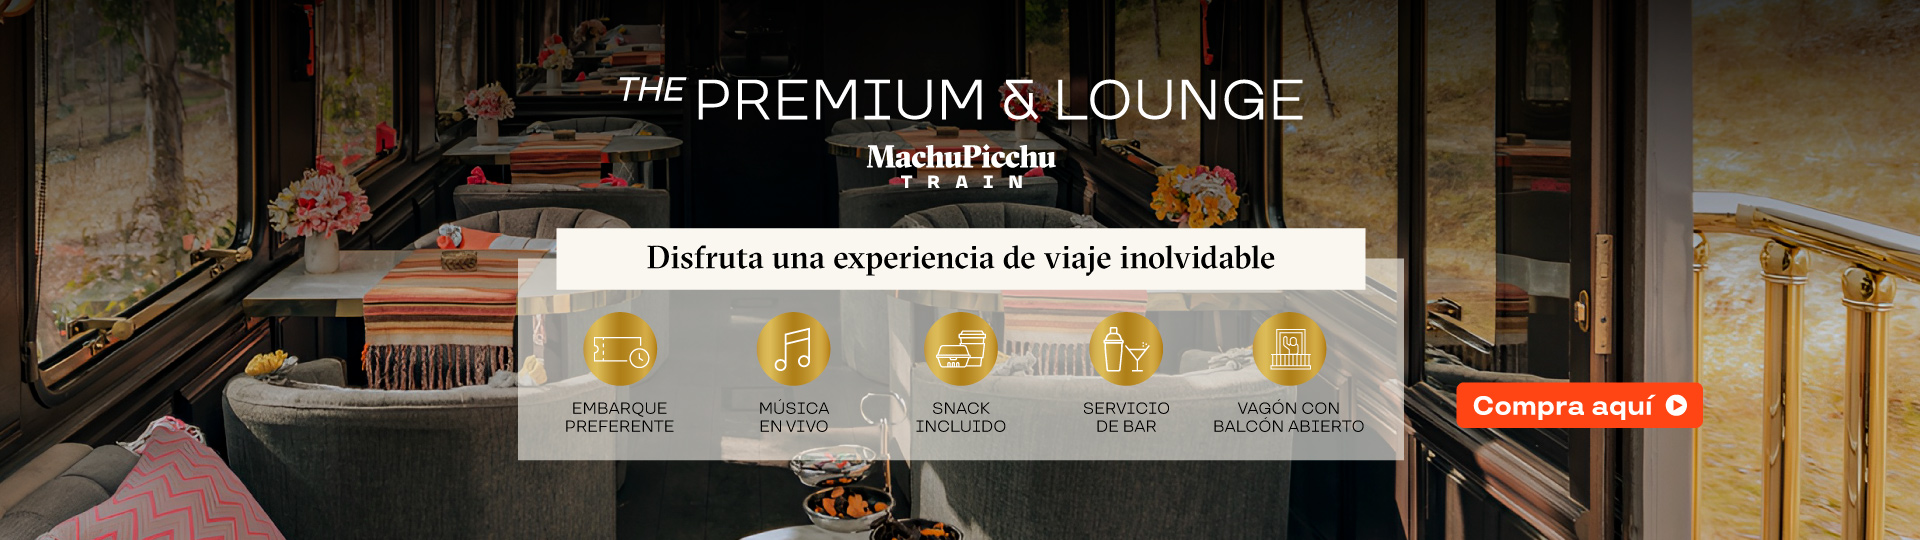 The Premium & Lounge